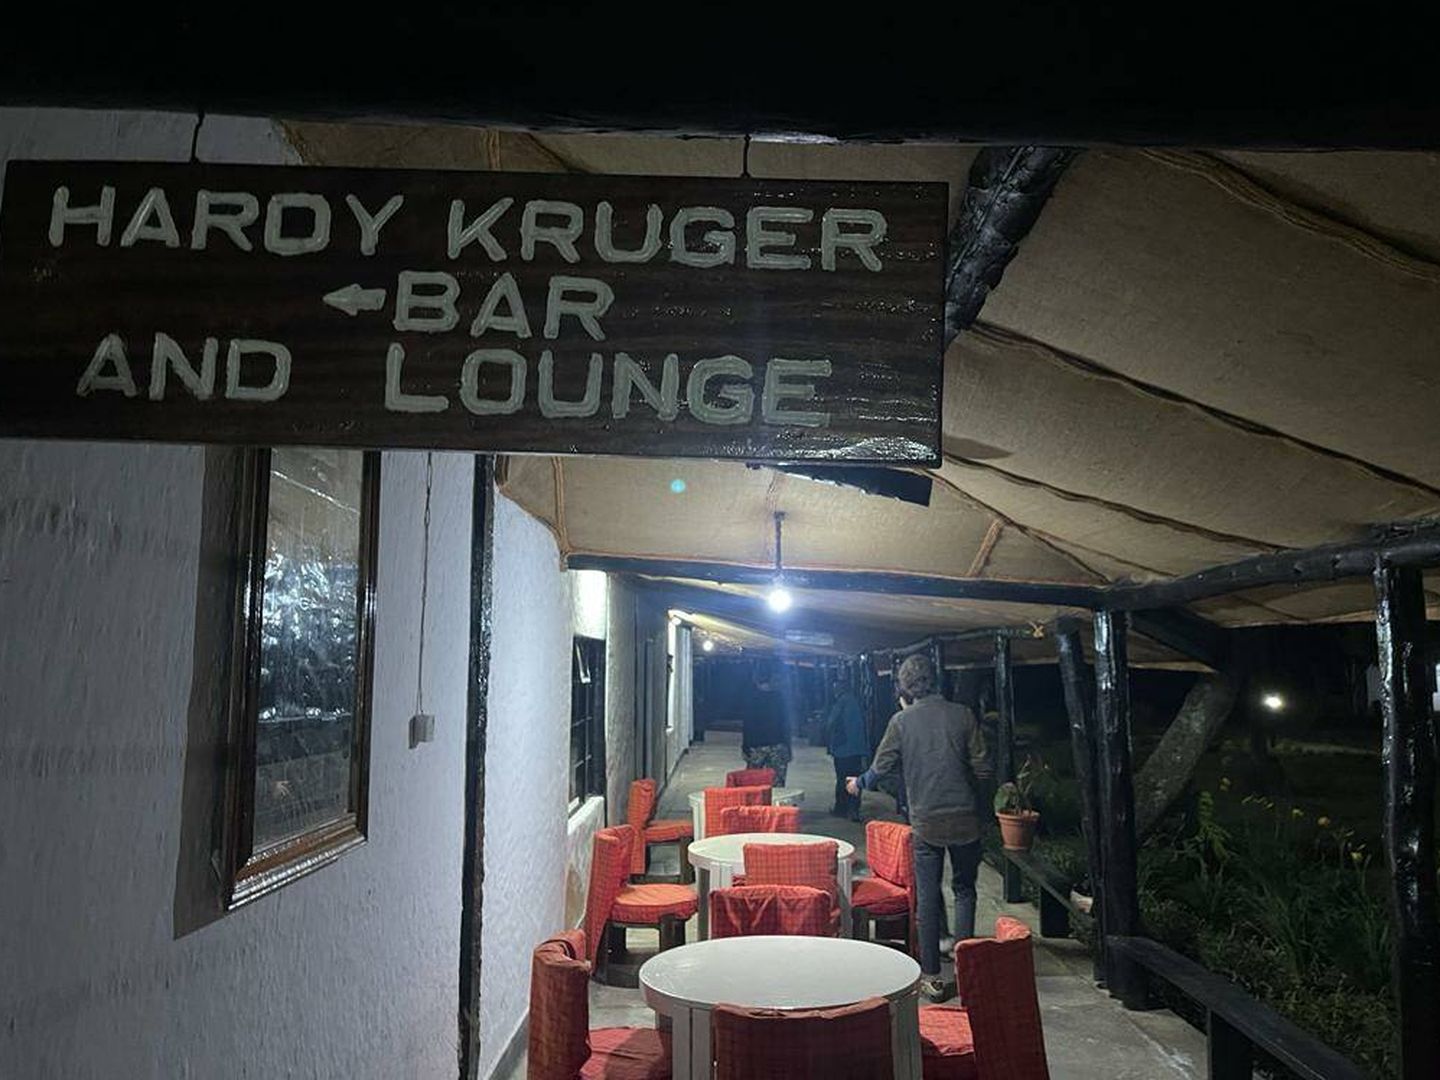 El bar de Hardy Krüger. (Enrique Lavigne)